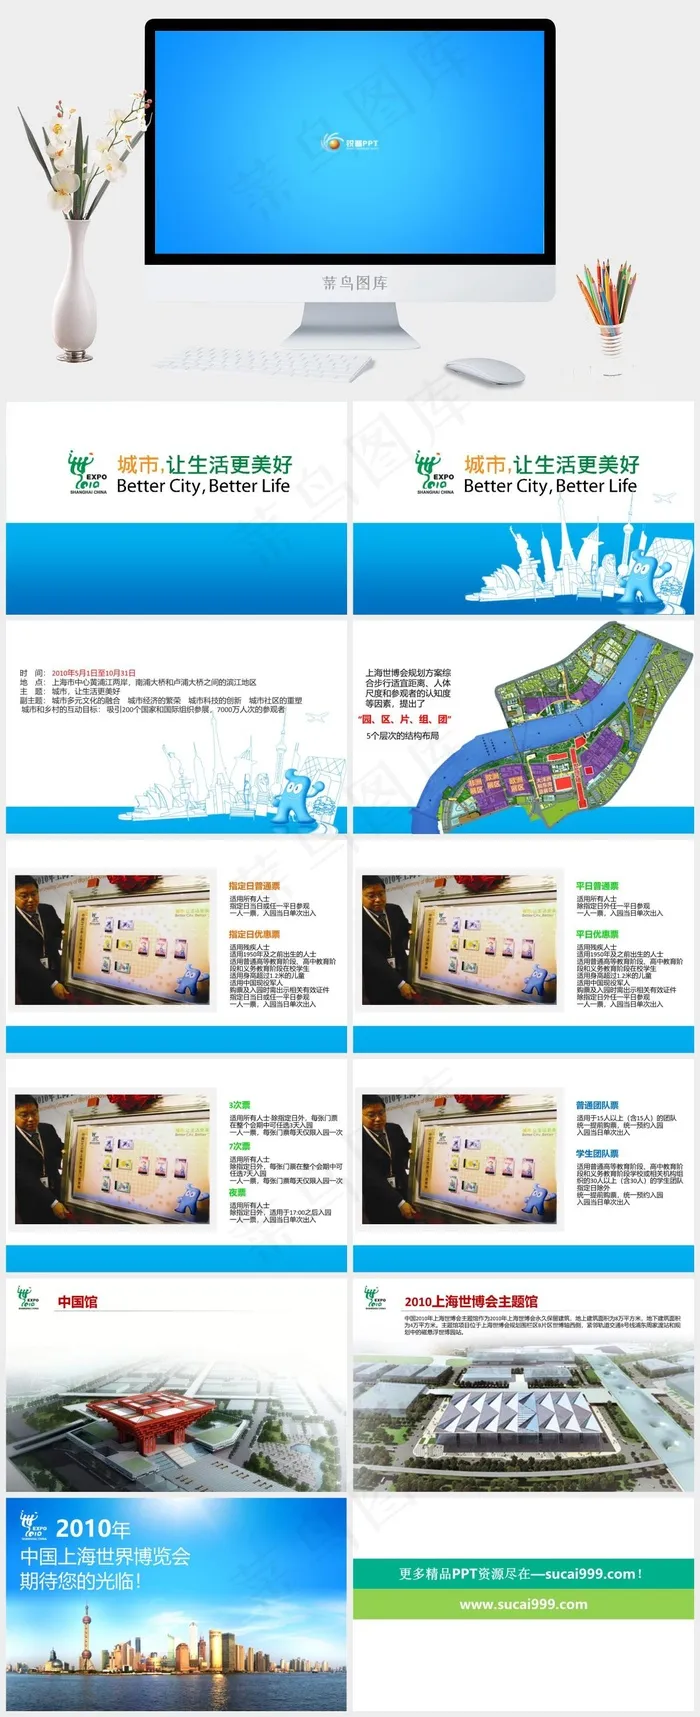 上海世界博览会动态PPT模板蓝色简洁PPT模板